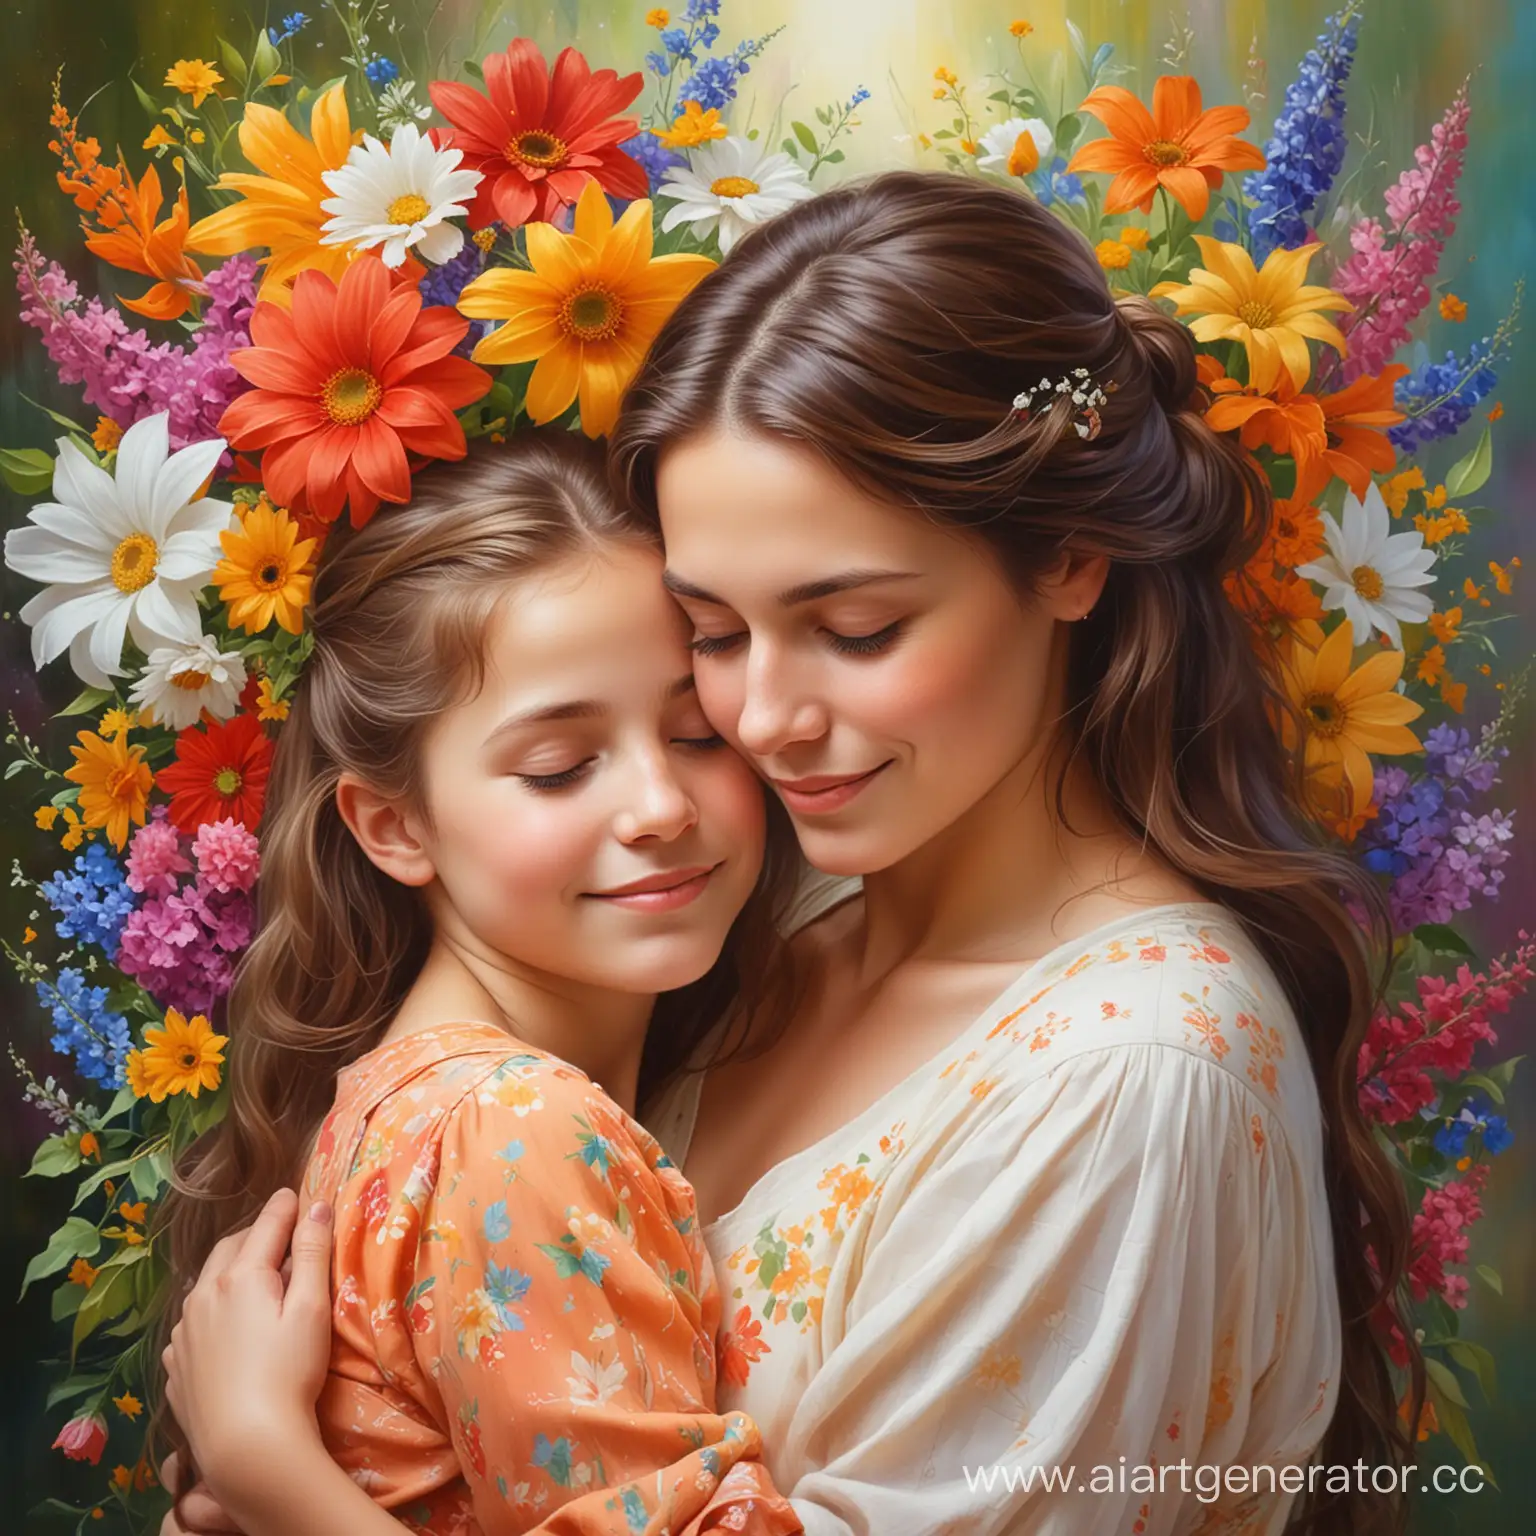 нежная и трогательная сцена: мама, обнявшая свою дочь, ласково улыбается ему. Вокруг них цветы в ярких оттенках, символизирующие любовь и заботу. Над ними витает атмосфера уюта и тепла. Картинка передает теплоту и нежность отношений между матерью и ребенком, призывая читателя окунуться в мир их взаимопонимания и любви